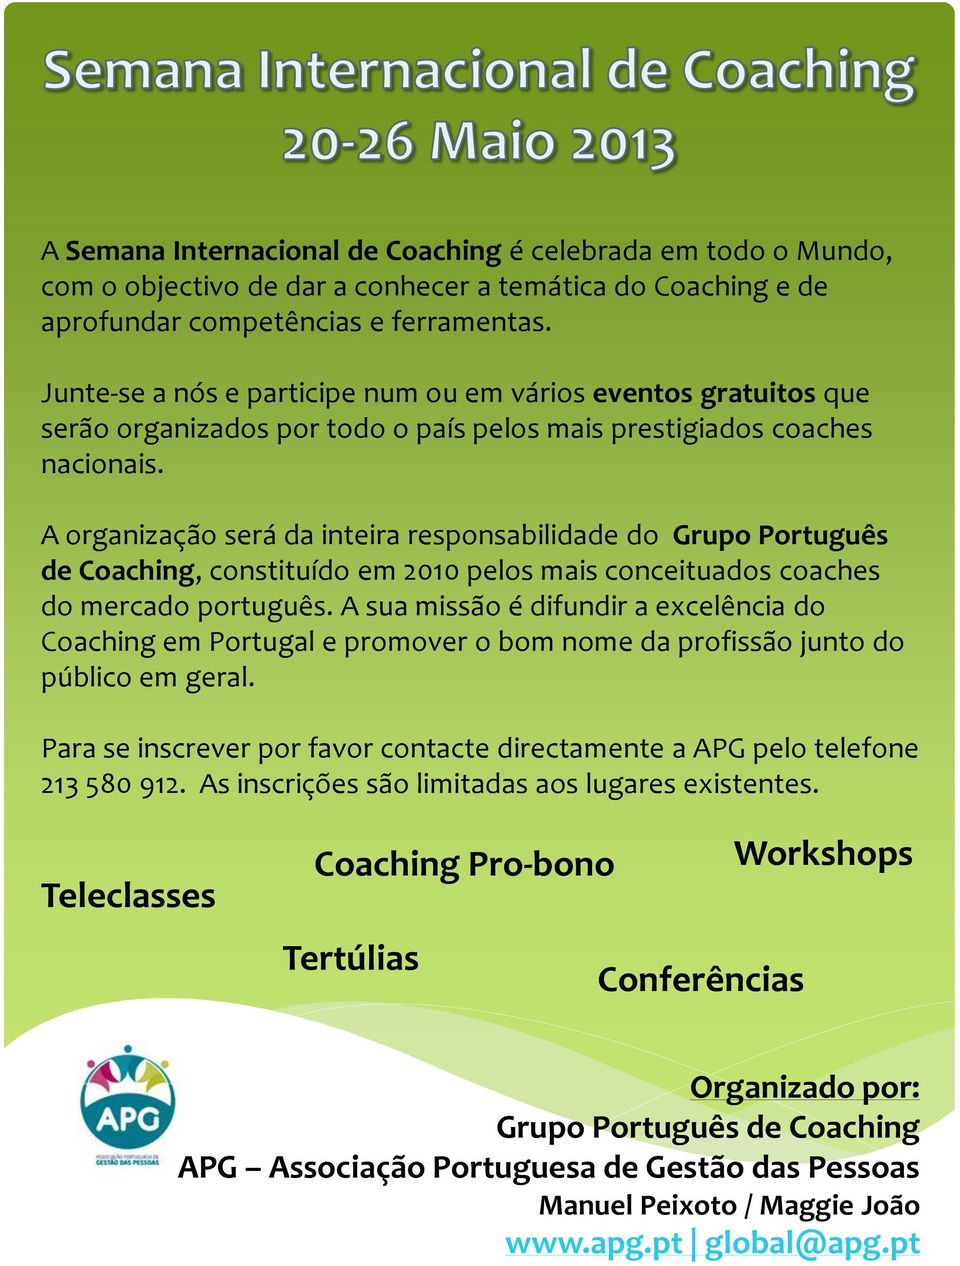 A organização será da inteira responsabilidade do Grupo Português de Coaching, constituído em 2010 pelos mais conceituados coaches do mercado português.